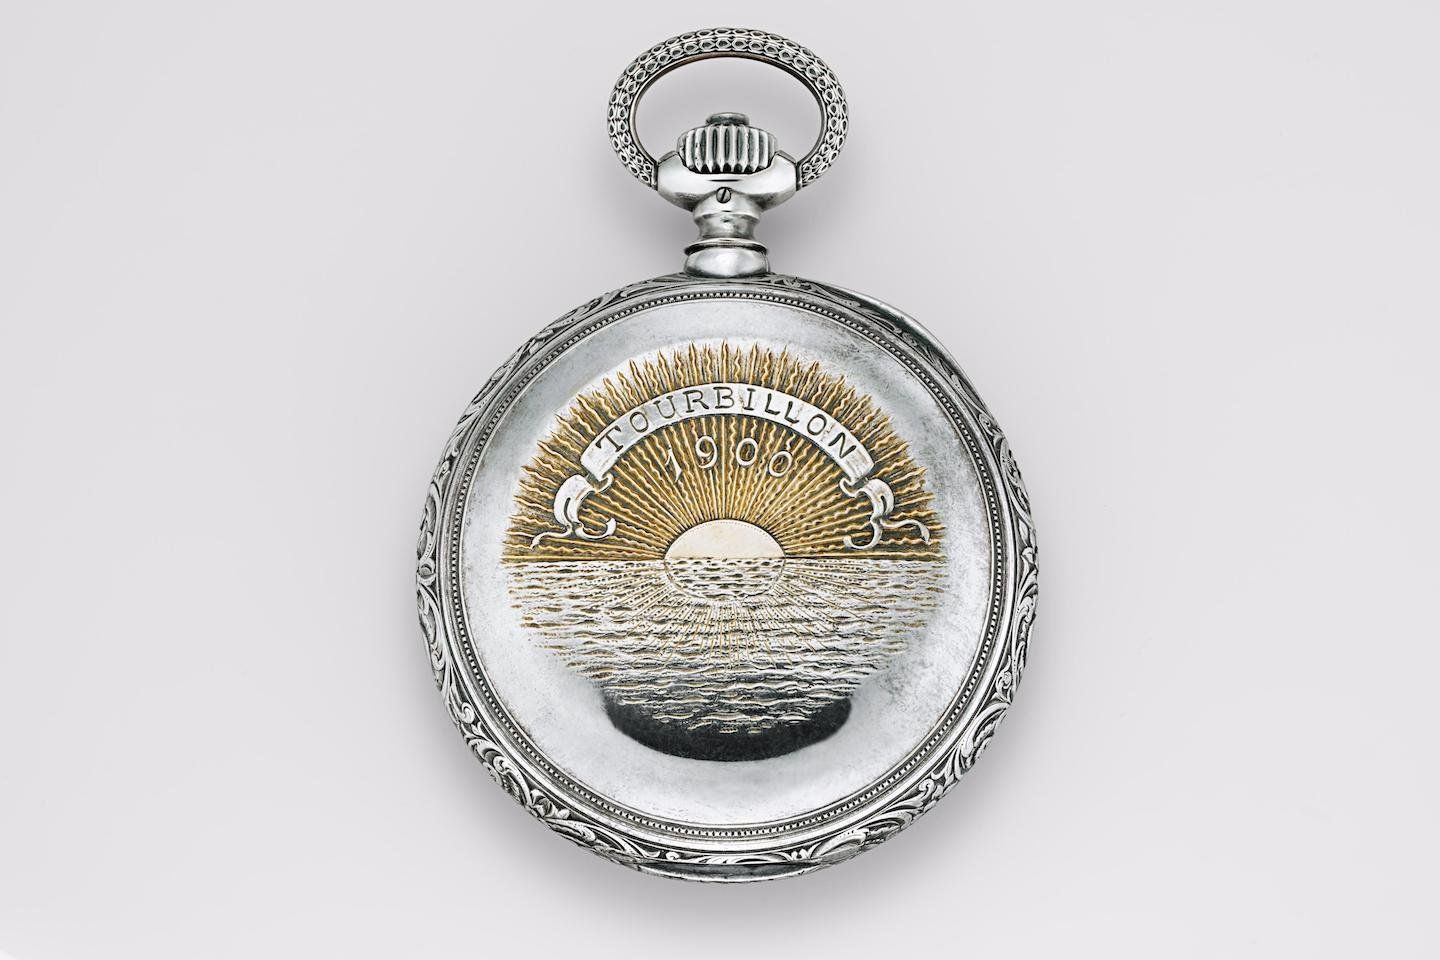 Centennial TourbillonPocket watch No. 41000